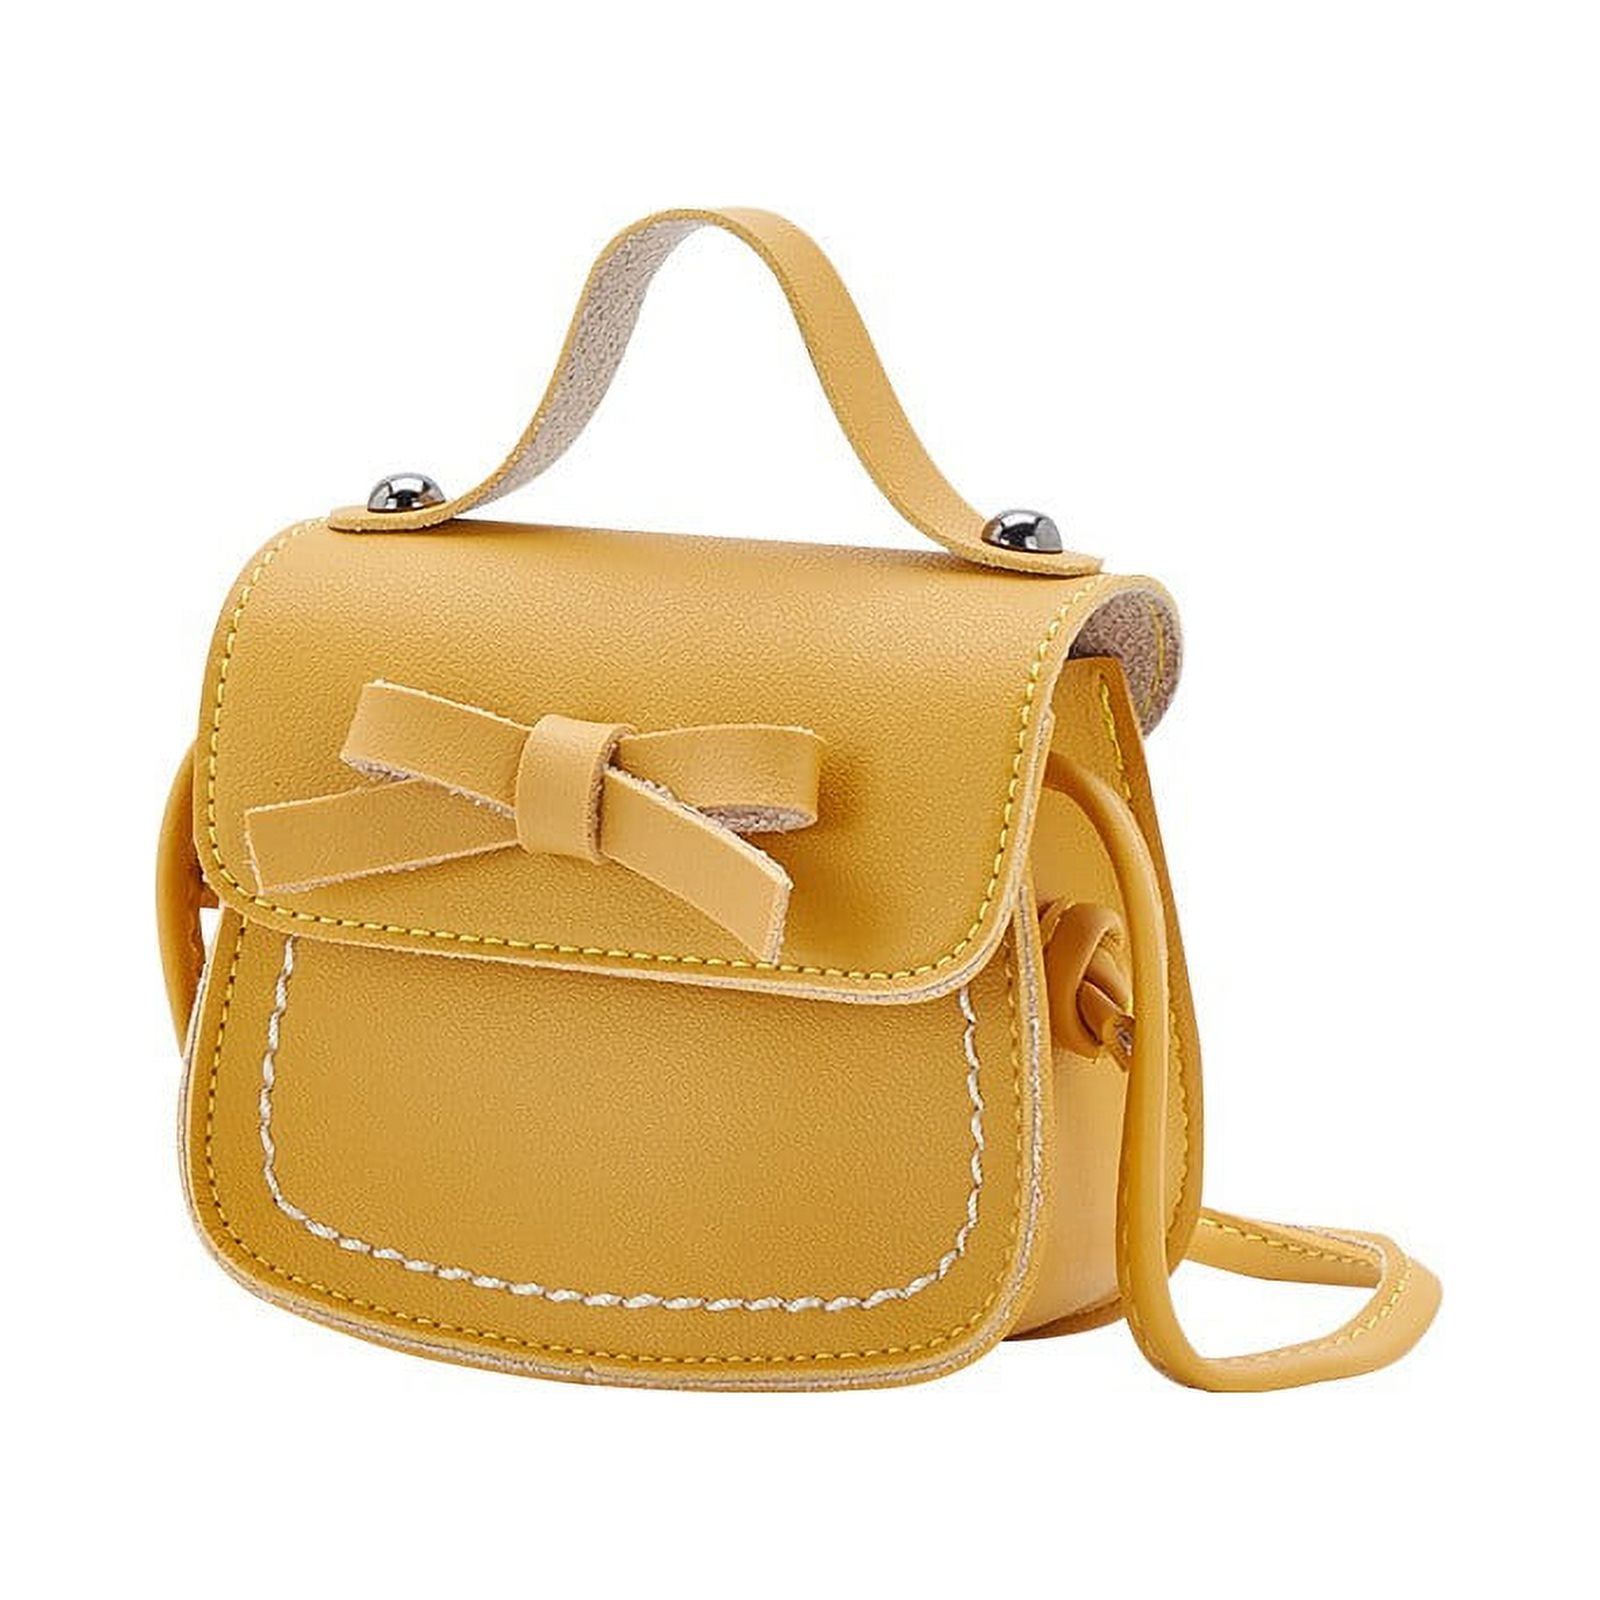  Women's Tote Handbags Women Cute Bowknot Wallet